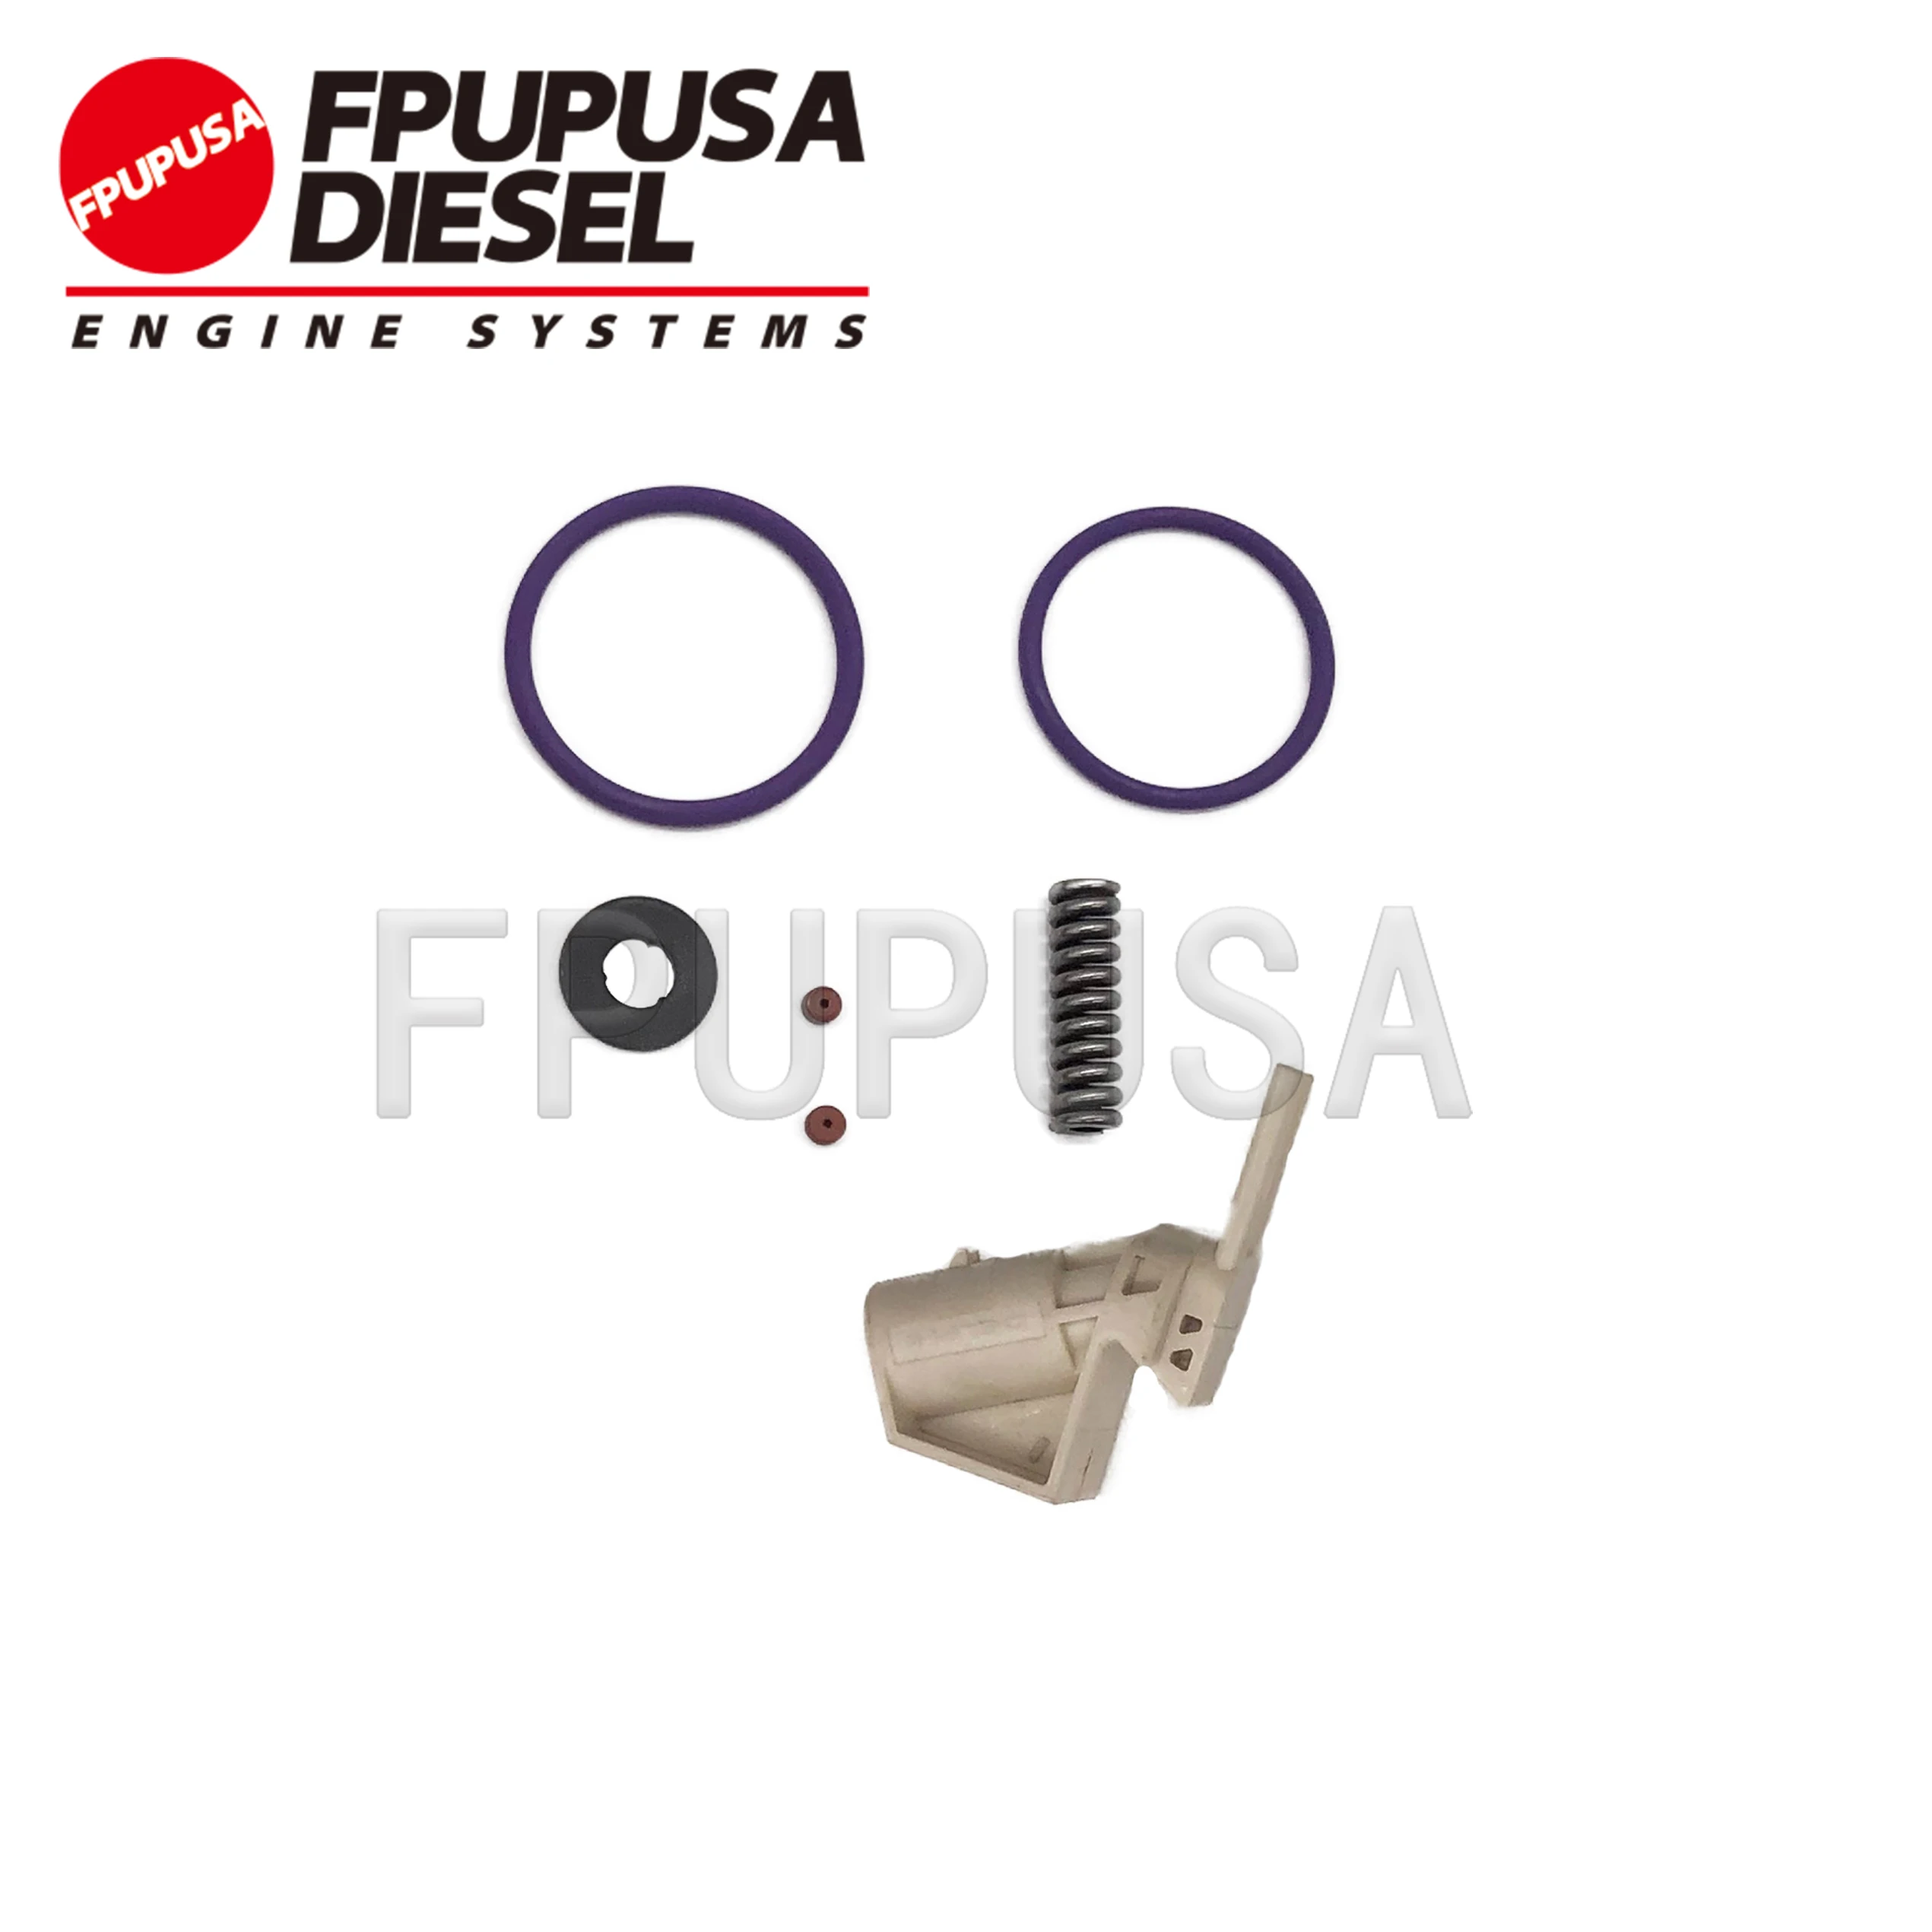 FPUPUSA Inyector de Combustible Kits de Reparación para E1 Inyector 20430583 20440388 20500620 21586294 21586284